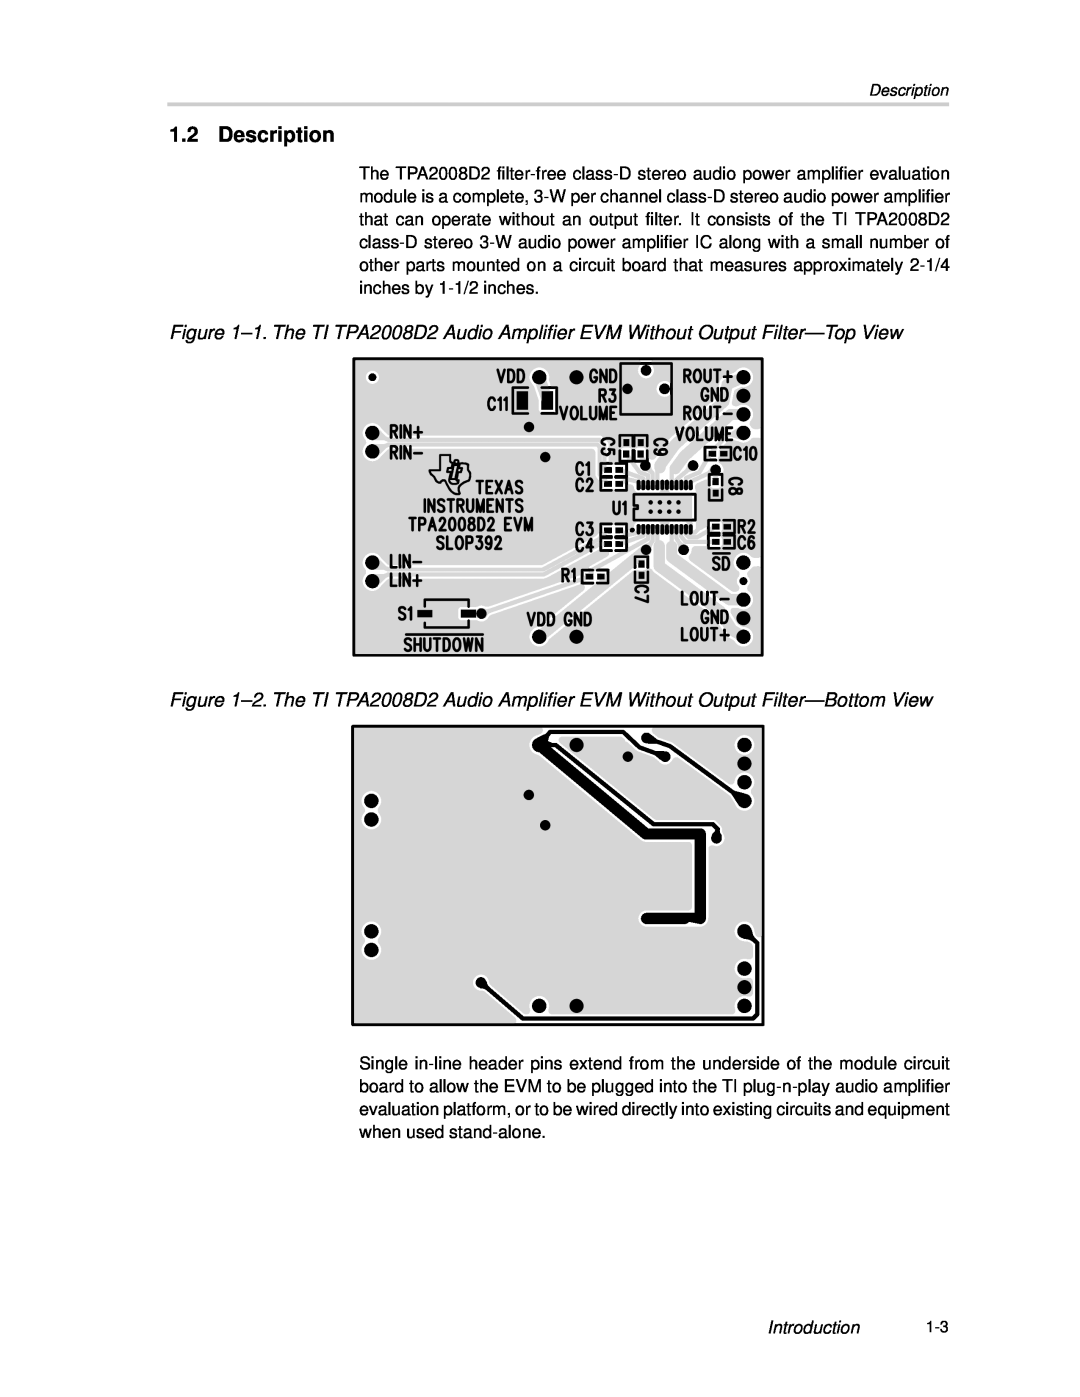 Texas Instruments TPA2008D2 manual Description 